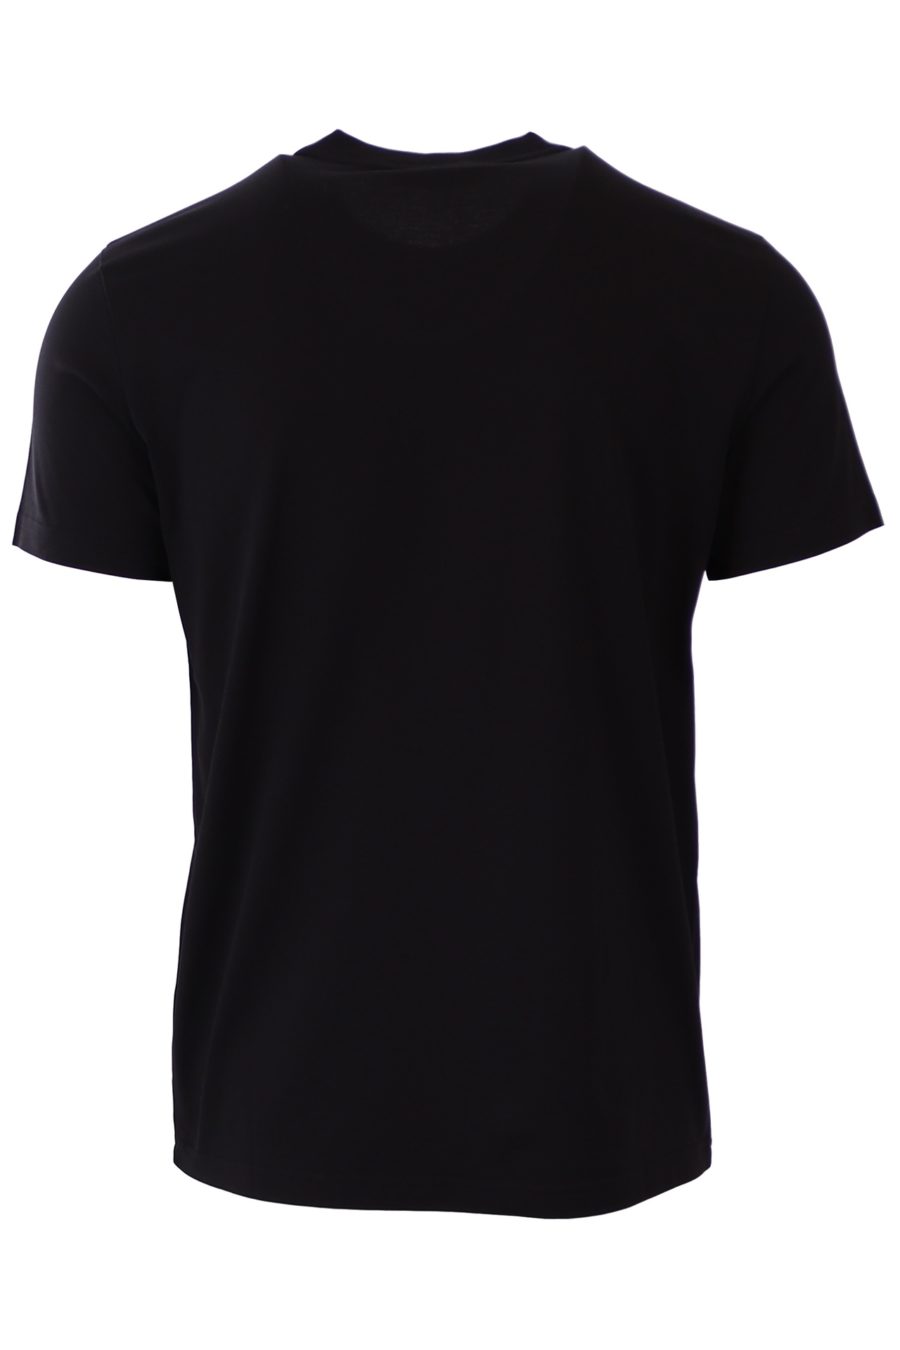 Givenchy Paris black slim fit T-shirt - fa204ec9d1ad0bce0d4ac7f5e43f7203532999a1